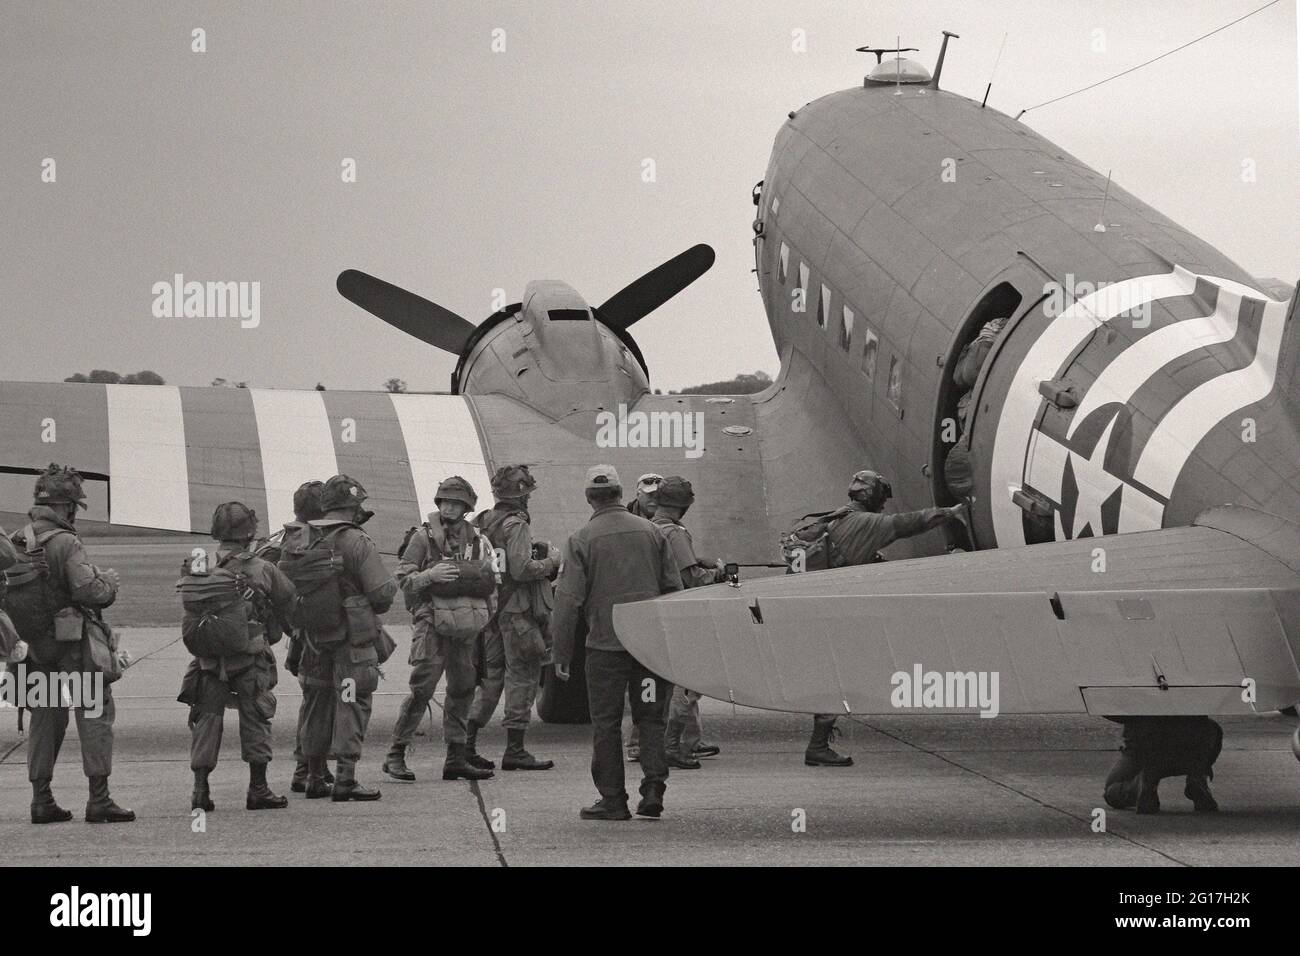 Paracadutisti in attesa di salire a bordo di un Douglas C-47 Skytrain presso il corpo aereo dell'esercito degli Stati Uniti, che si celebra a Duxford, nel Regno Unito, durante il 75° anniversario delle celebrazioni del D-Day Foto Stock